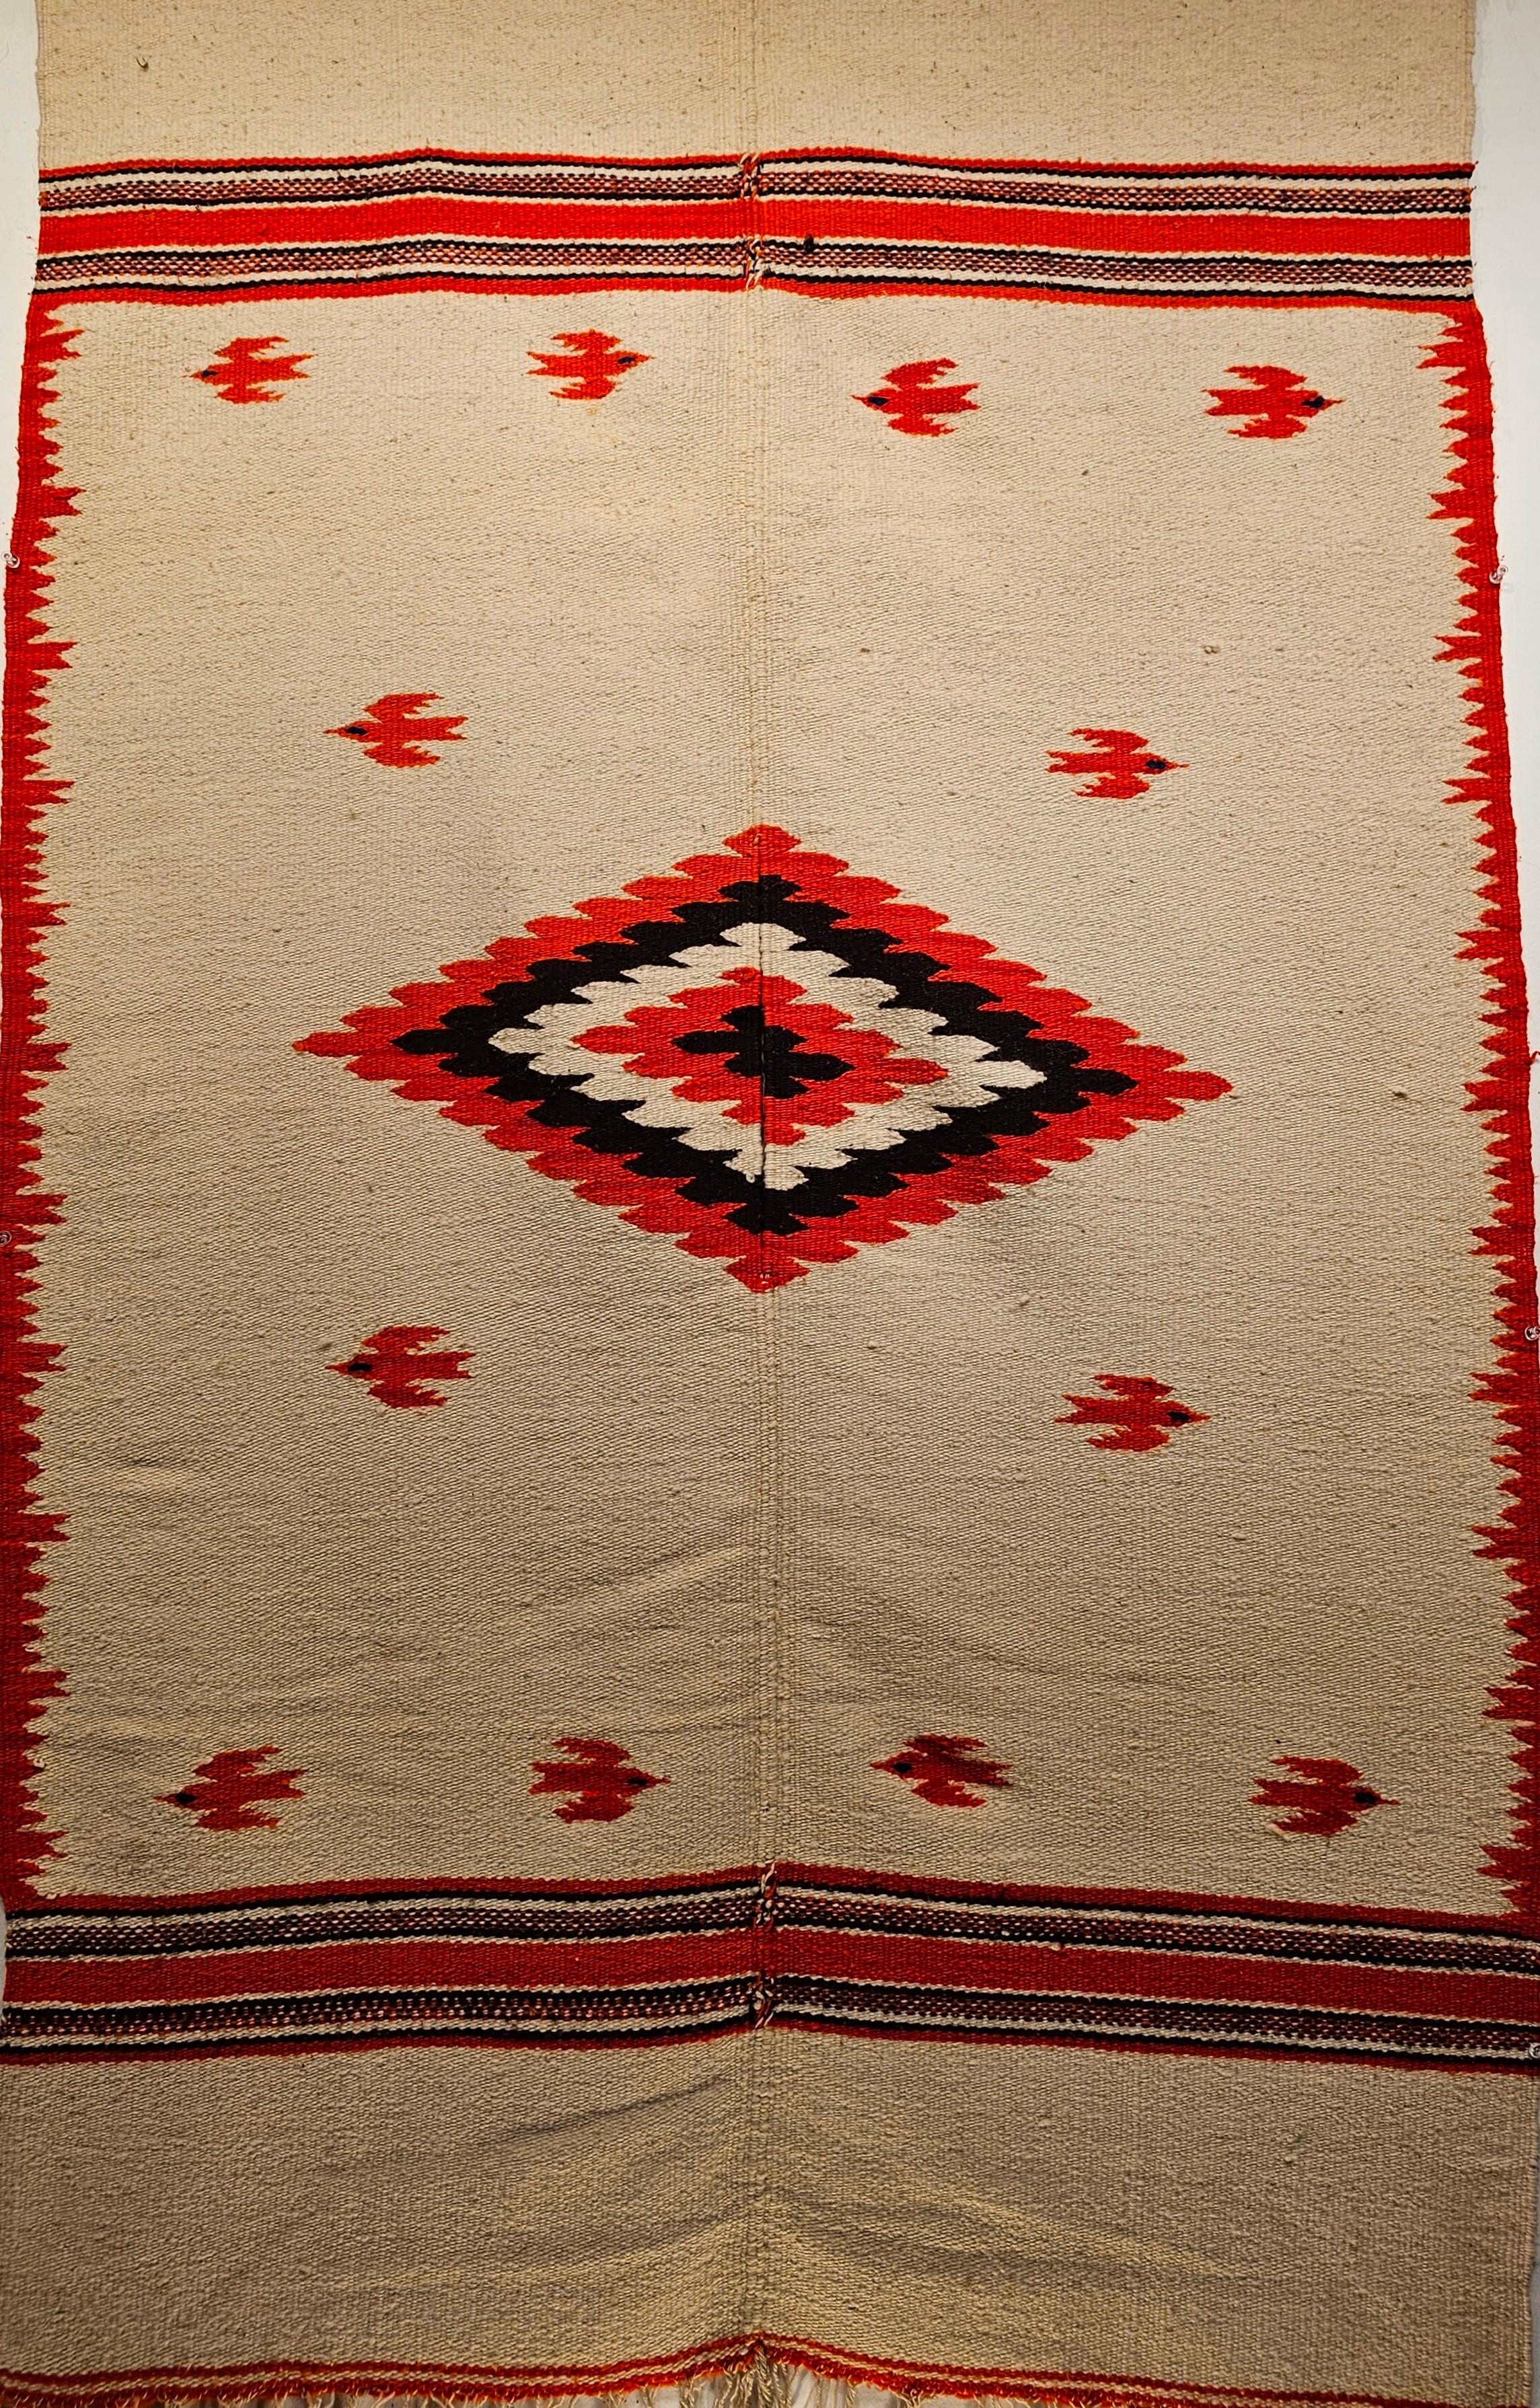 Vintage Mexican Serape Saltillo Kilim Rug & Kilim en couleur crème. Un magnifique tapis kilim Serape a été tissé au Mexique à la fin du 20e siècle. Le tapis a une belle laine de couleur crème ou blé avec des motifs d'oiseaux d'un orange vibrant. Il